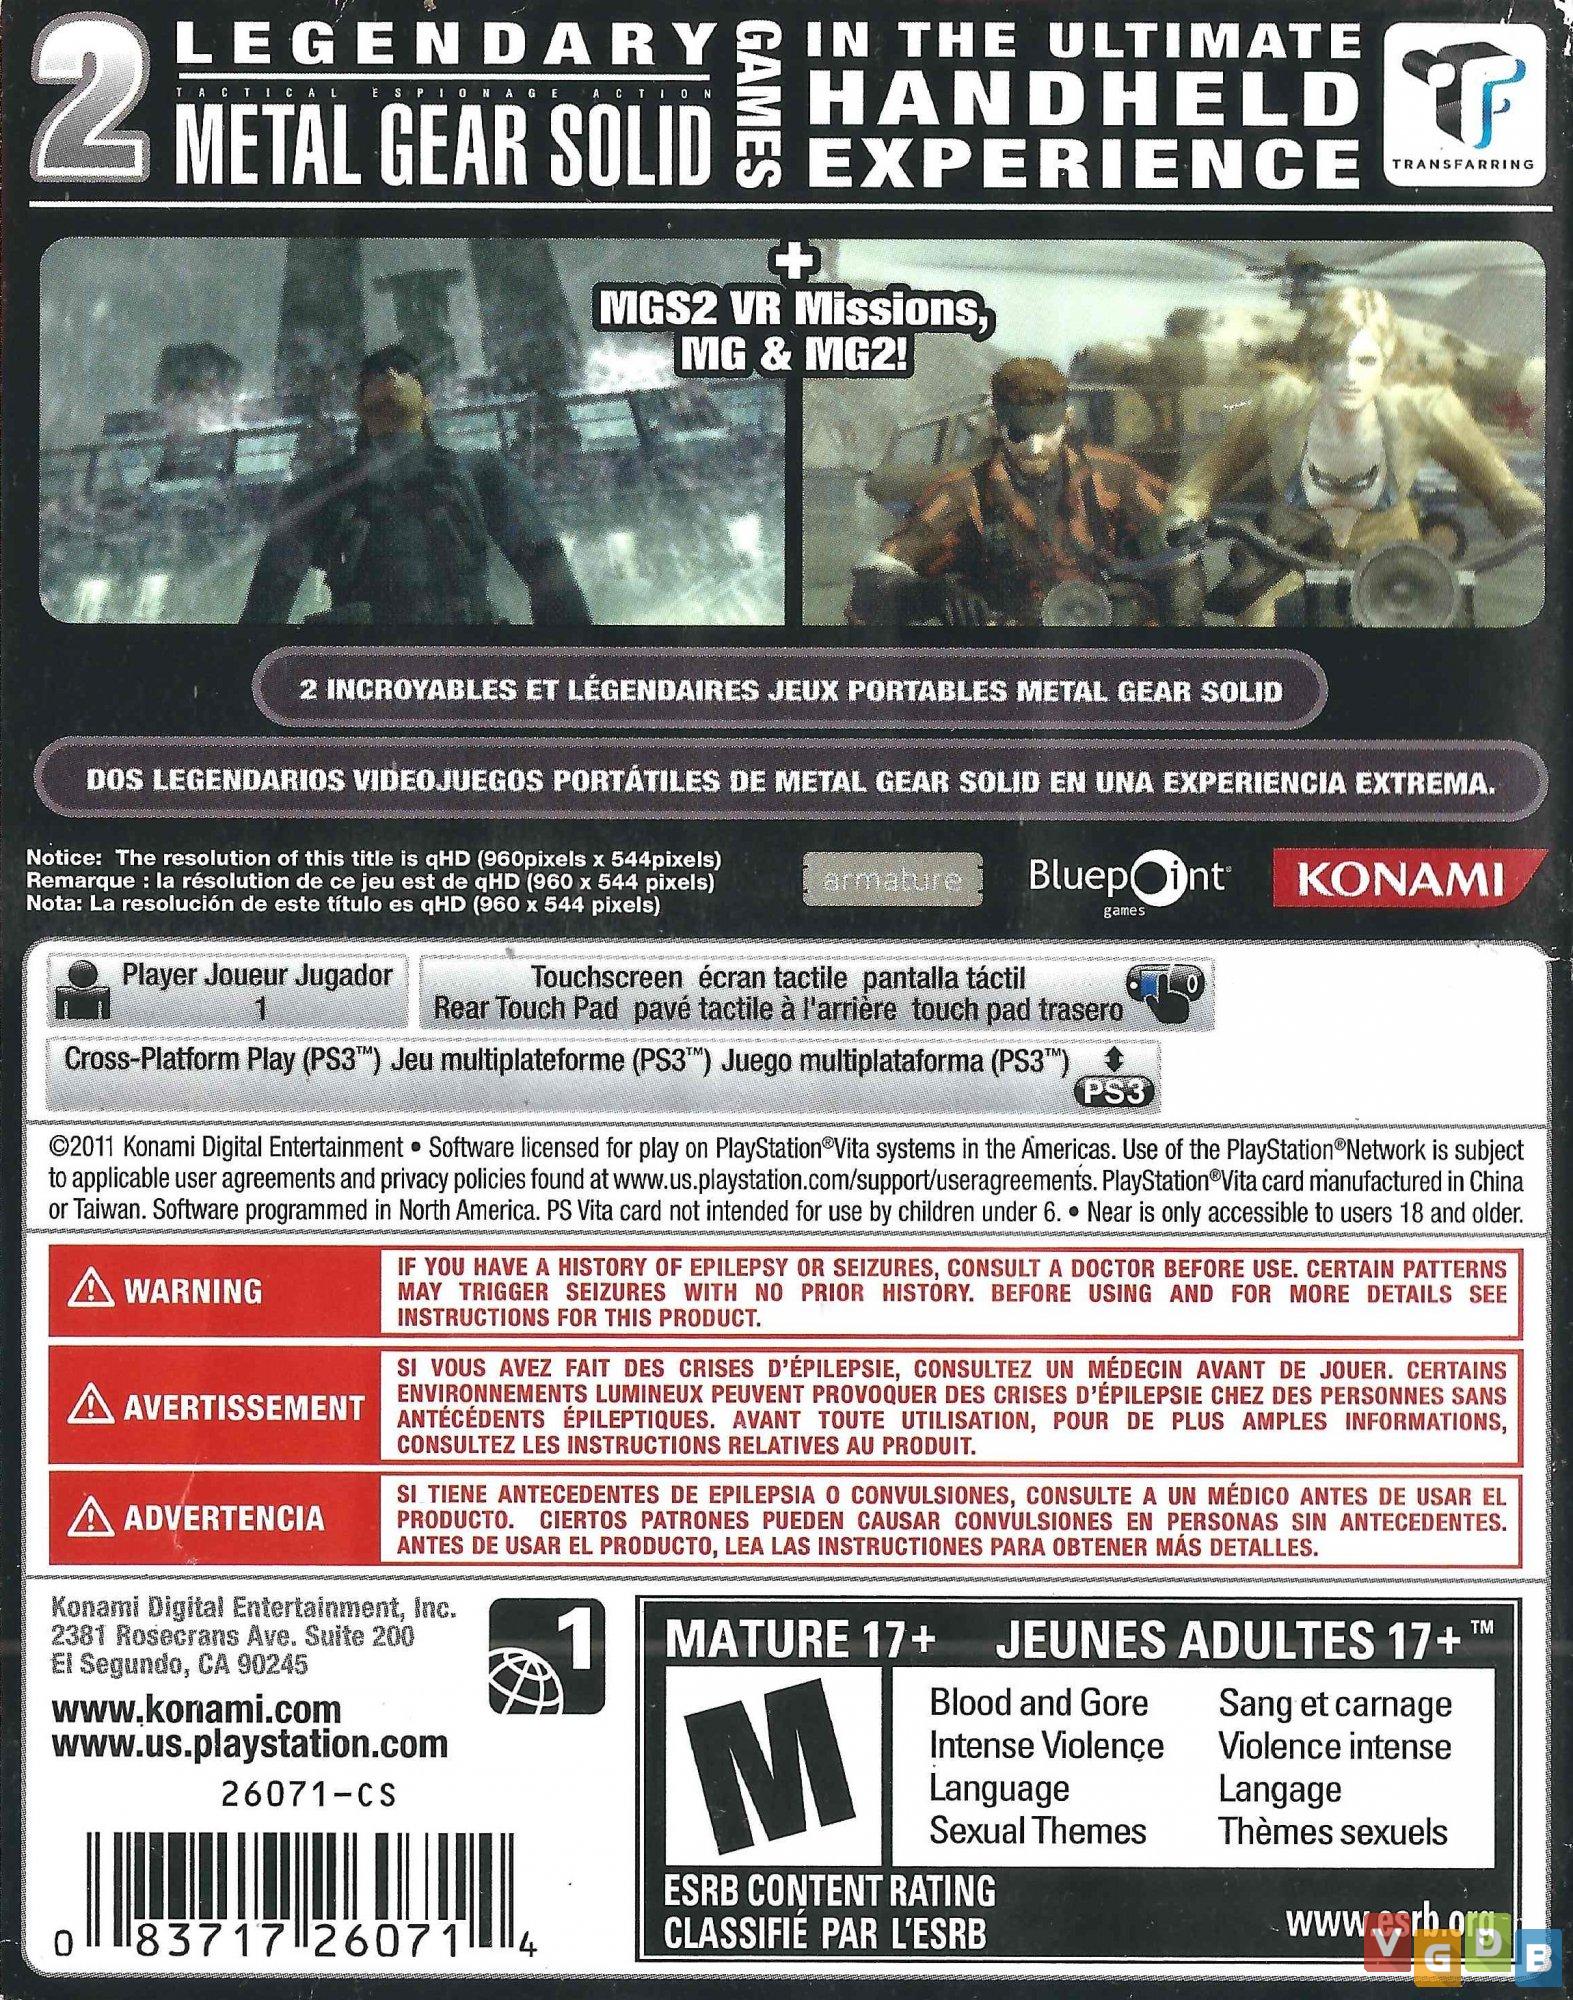 Jogos eletrônicos com classificação 18 (PEGI): Metal Gear Solid, Metal Gear  Solid 3: Snake Eater, Grand Theft Auto IV, Doom